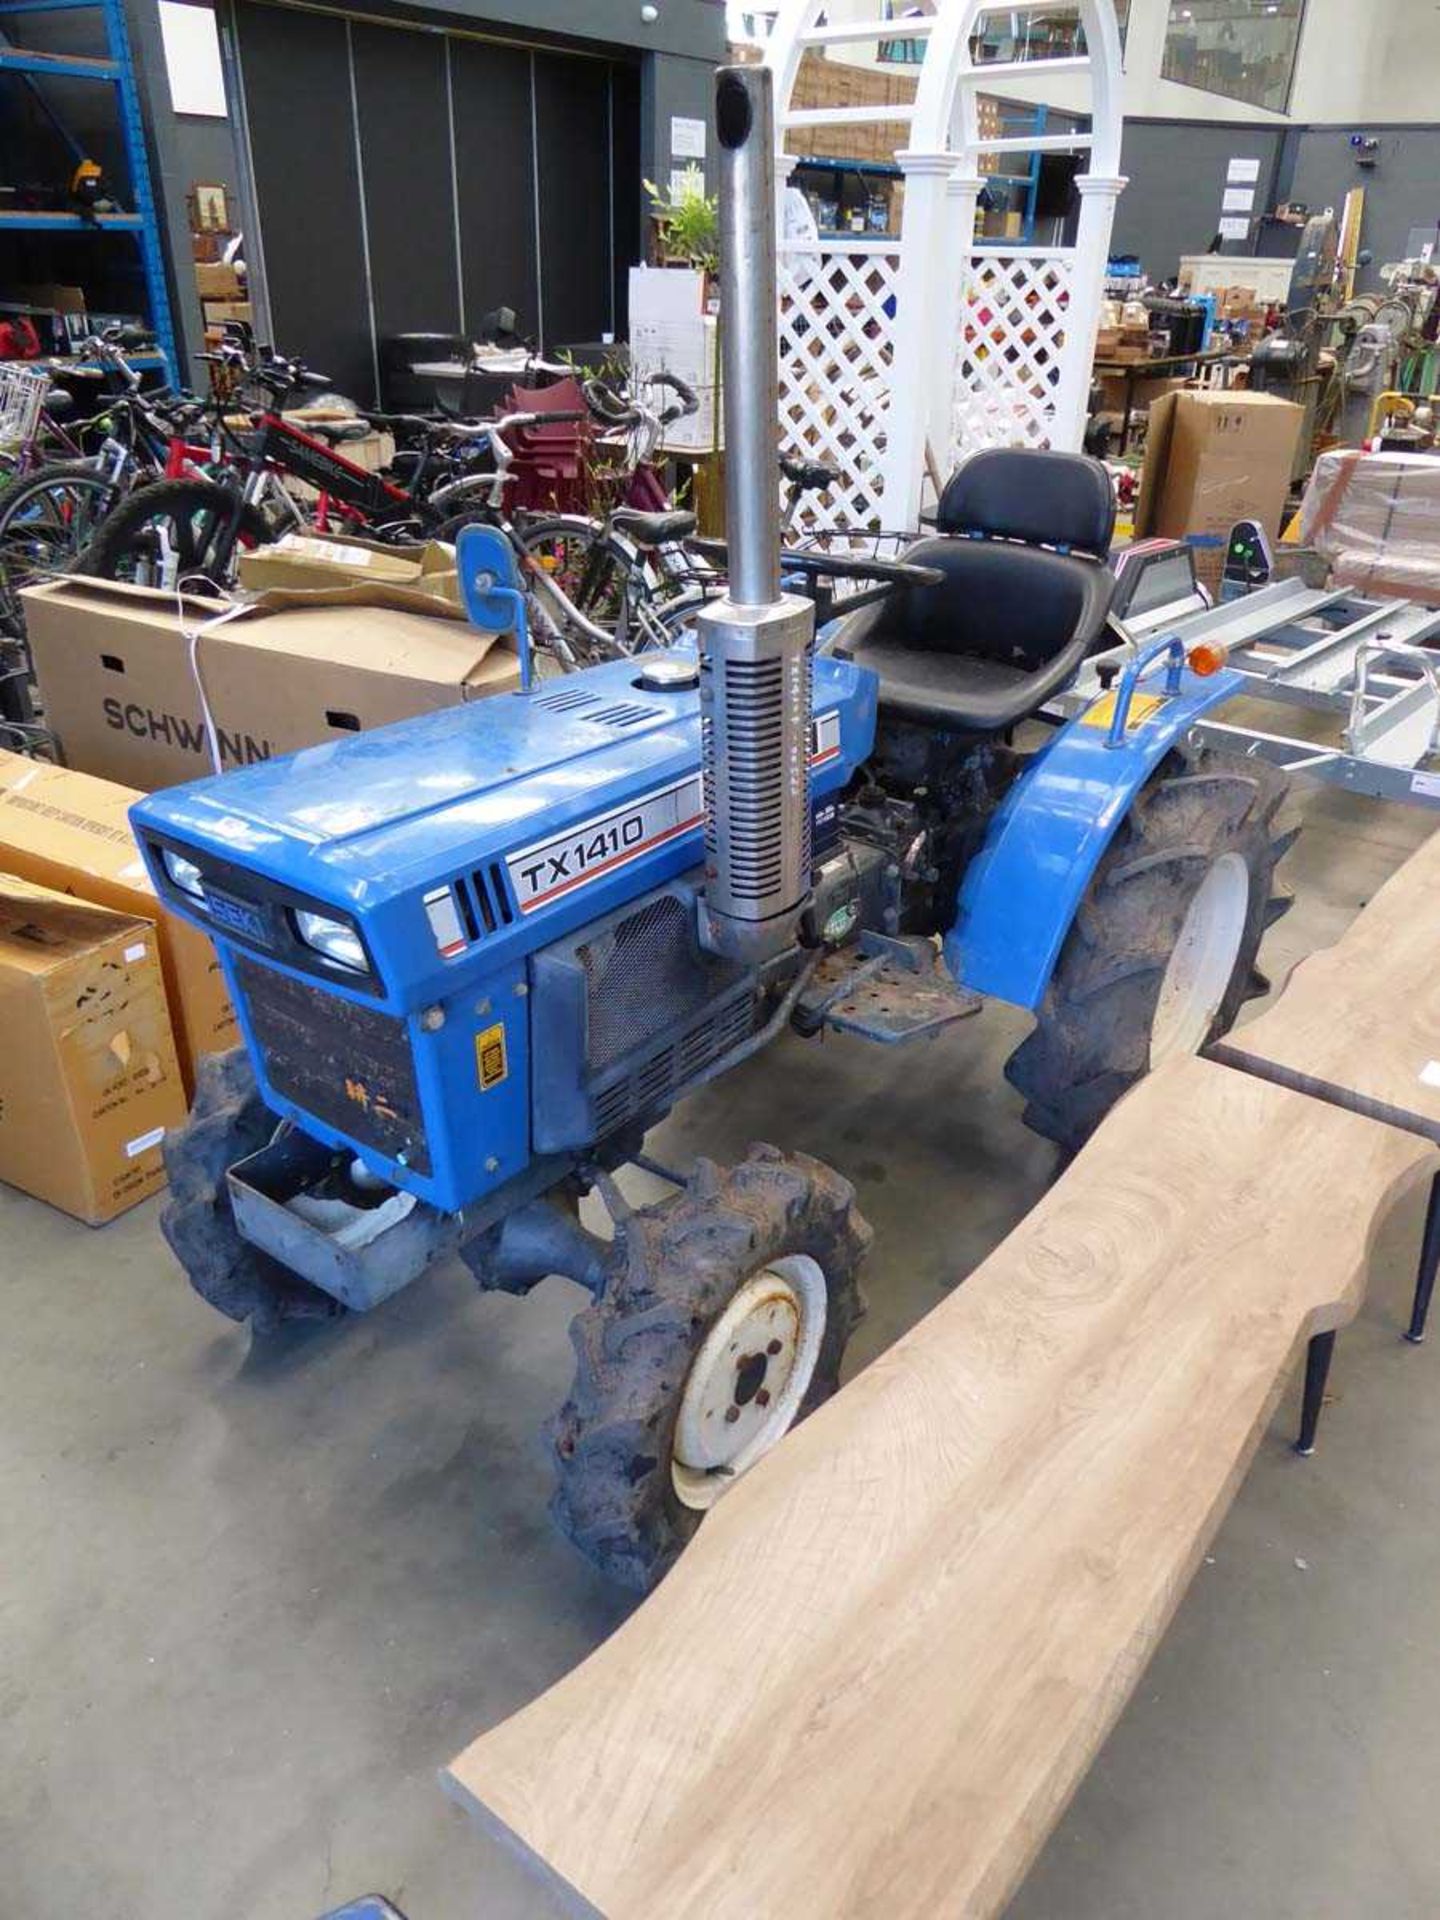 ISEKI Tx 1410 Mini Tractor - Bild 2 aus 8